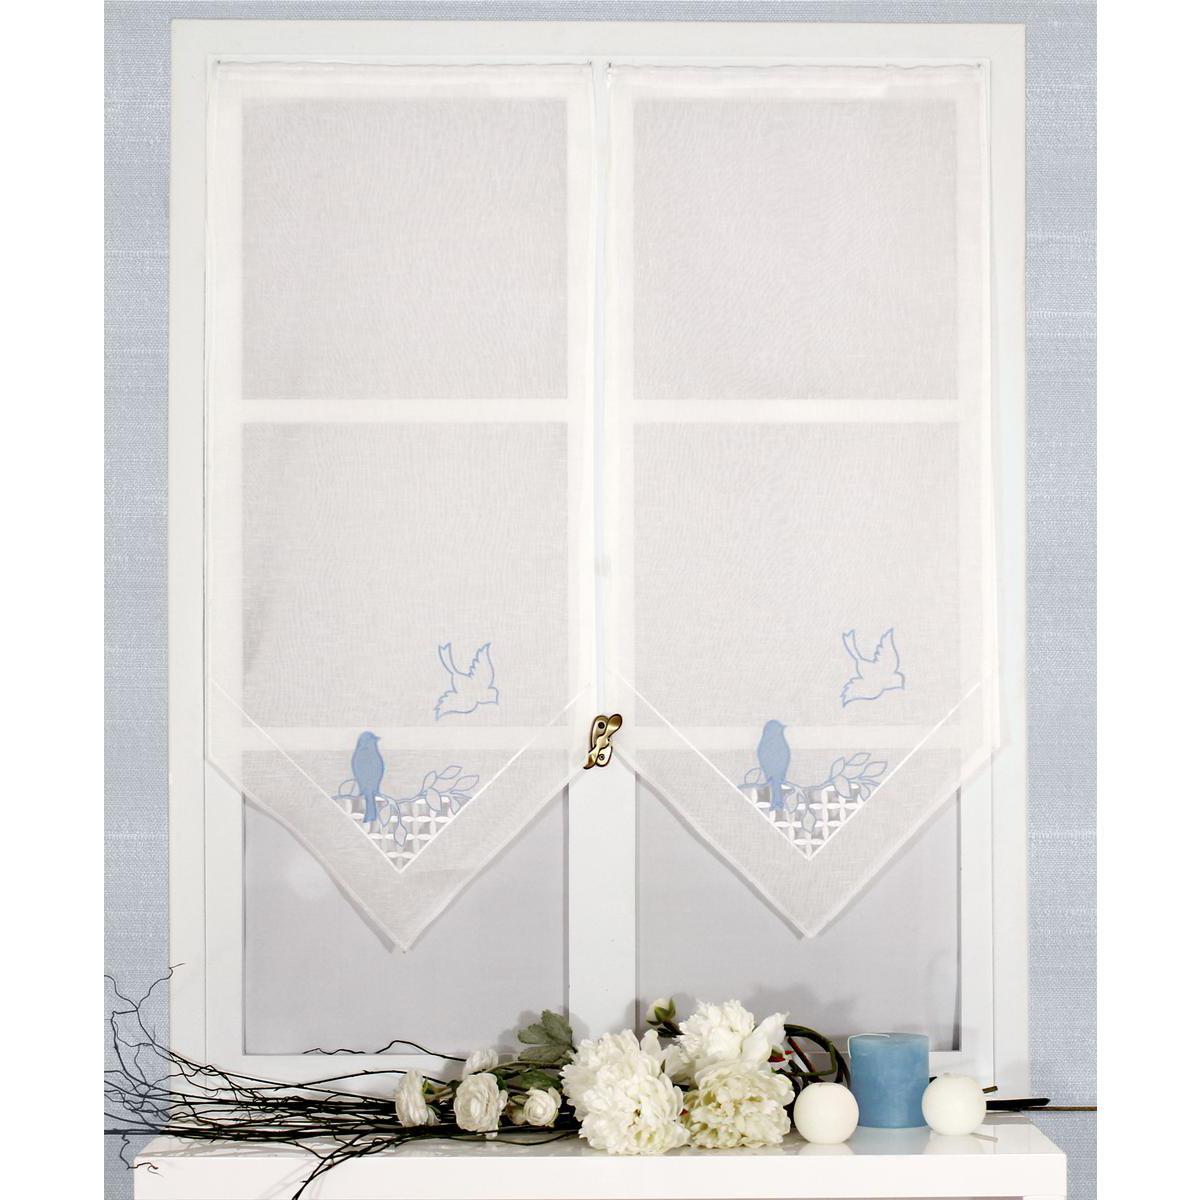 Paire de vitrages brodés - 100% polyester - 60 x 120 cm - Blanc, Bleu